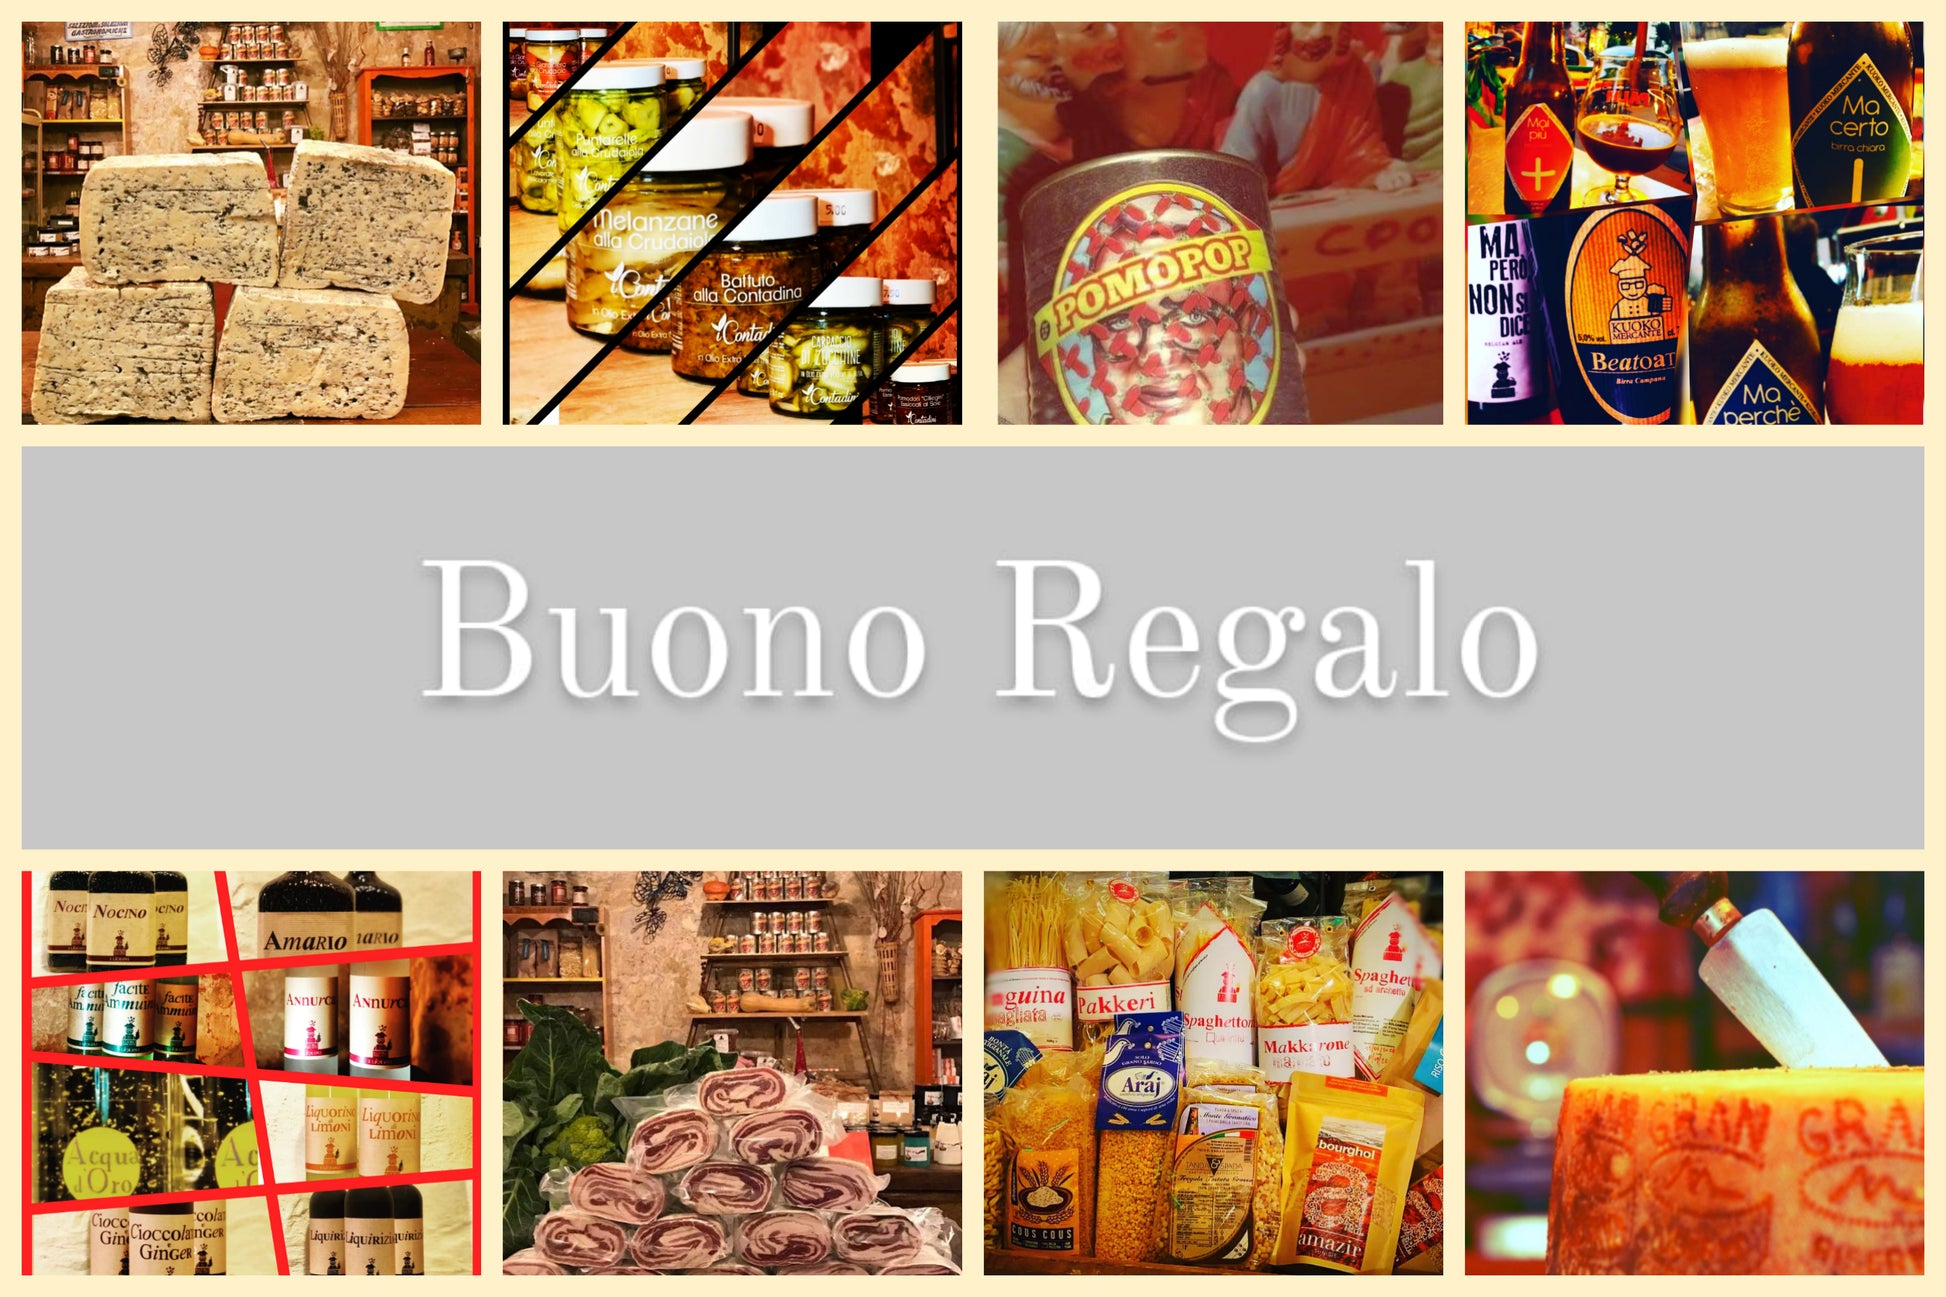 Buono Regalo - Drugstore Napoli